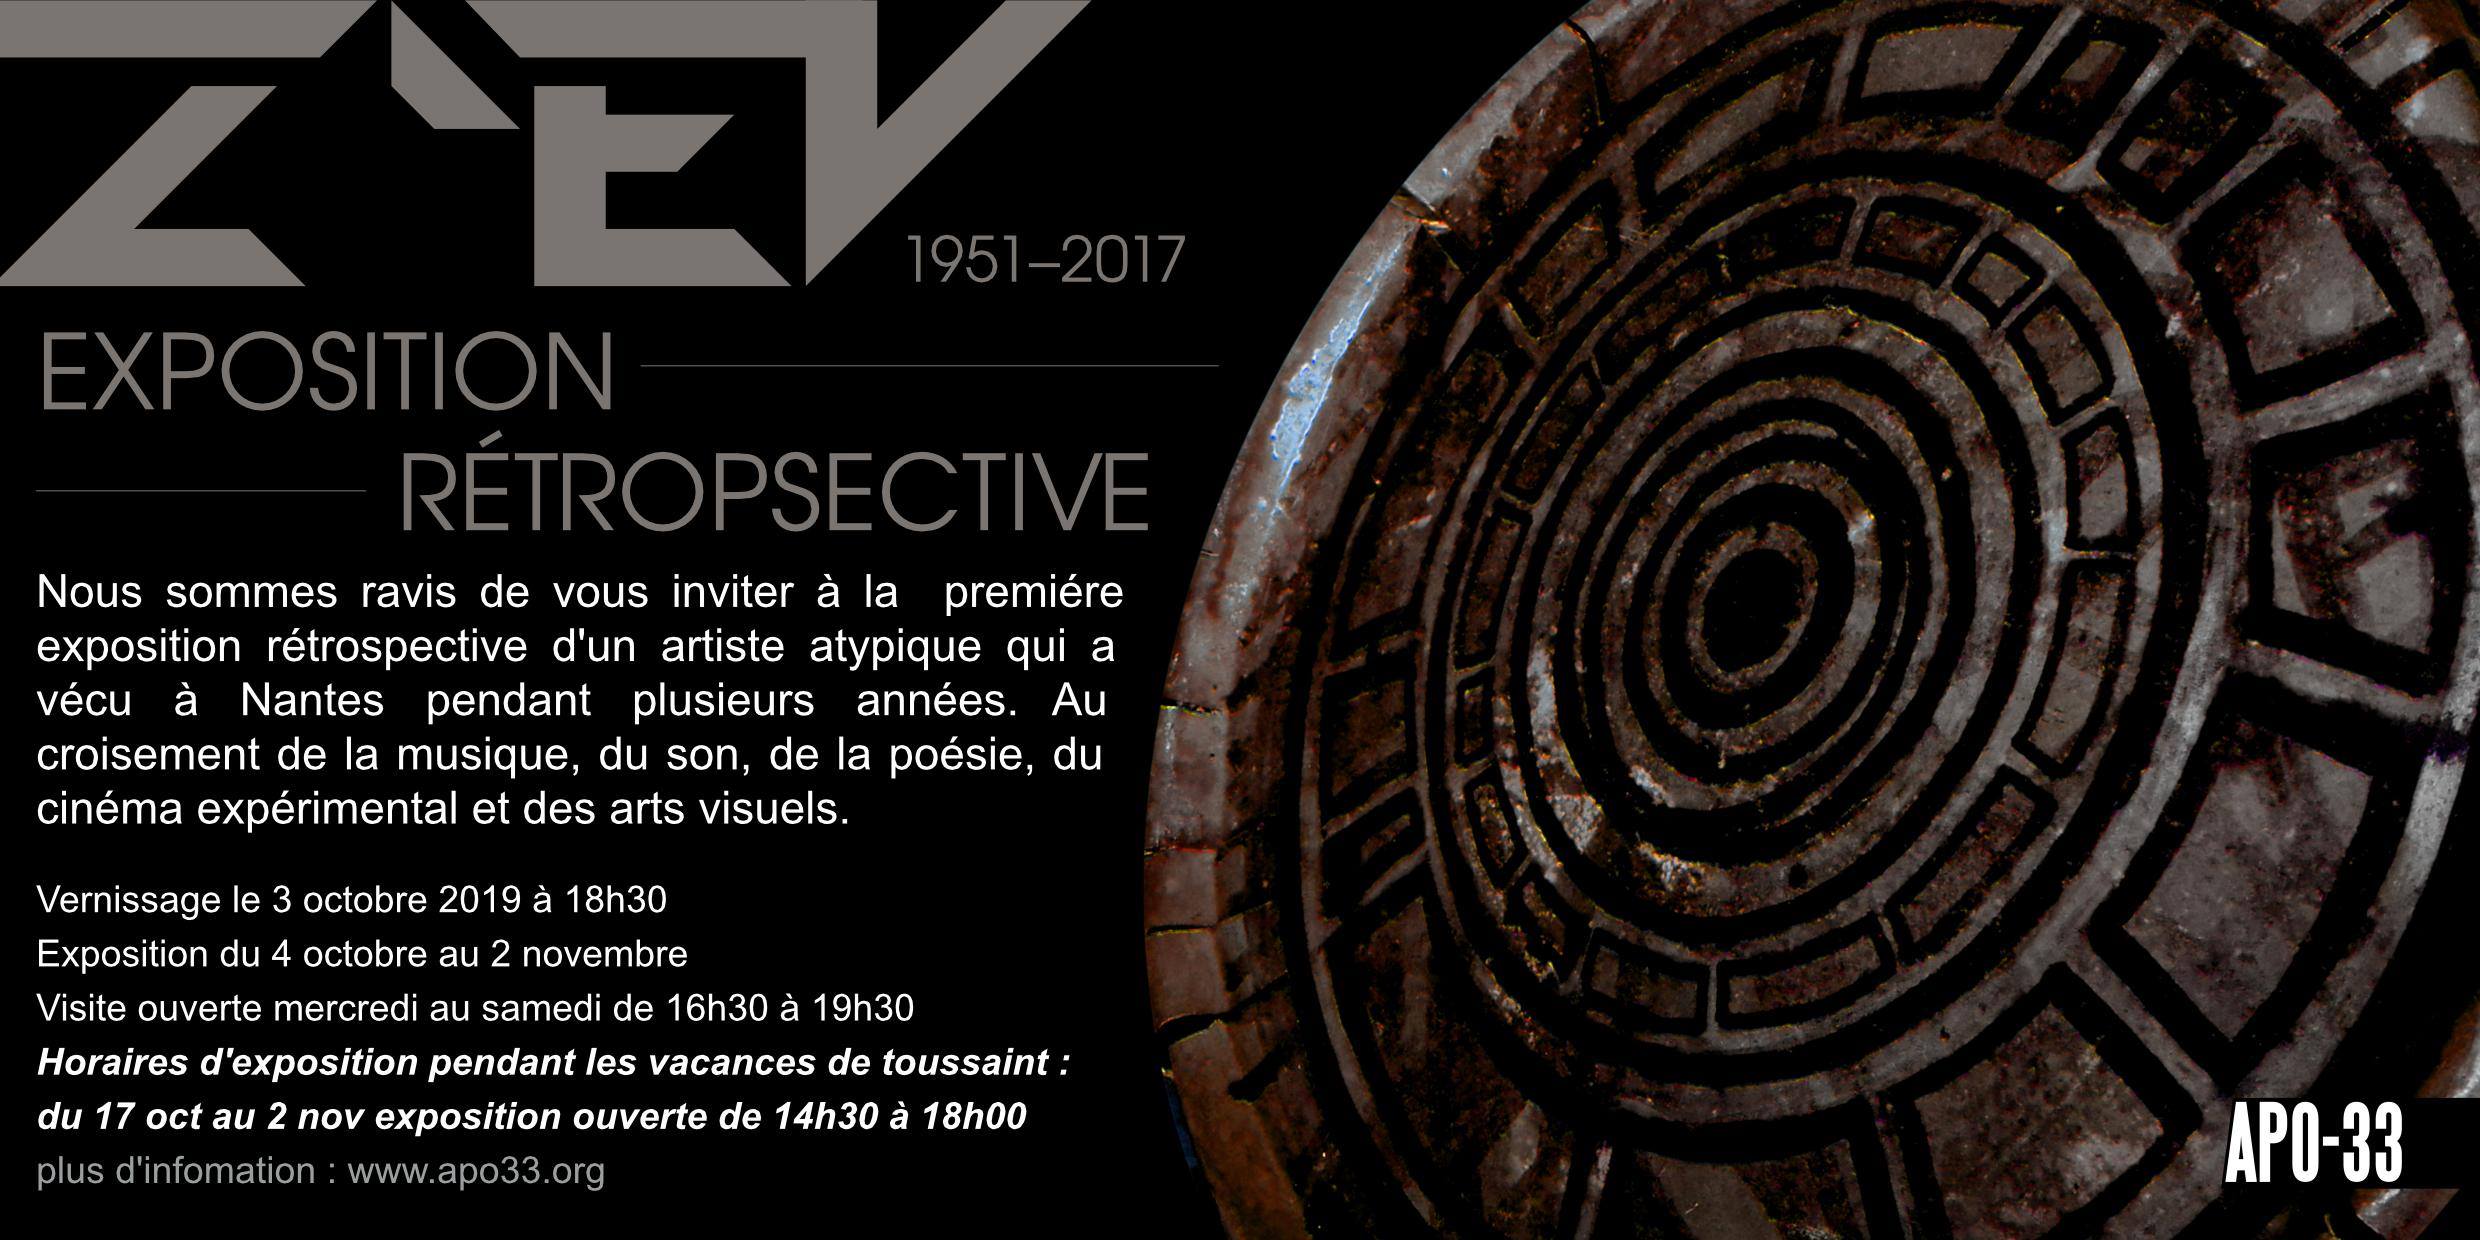 Exposition rétrospective : Z’EV